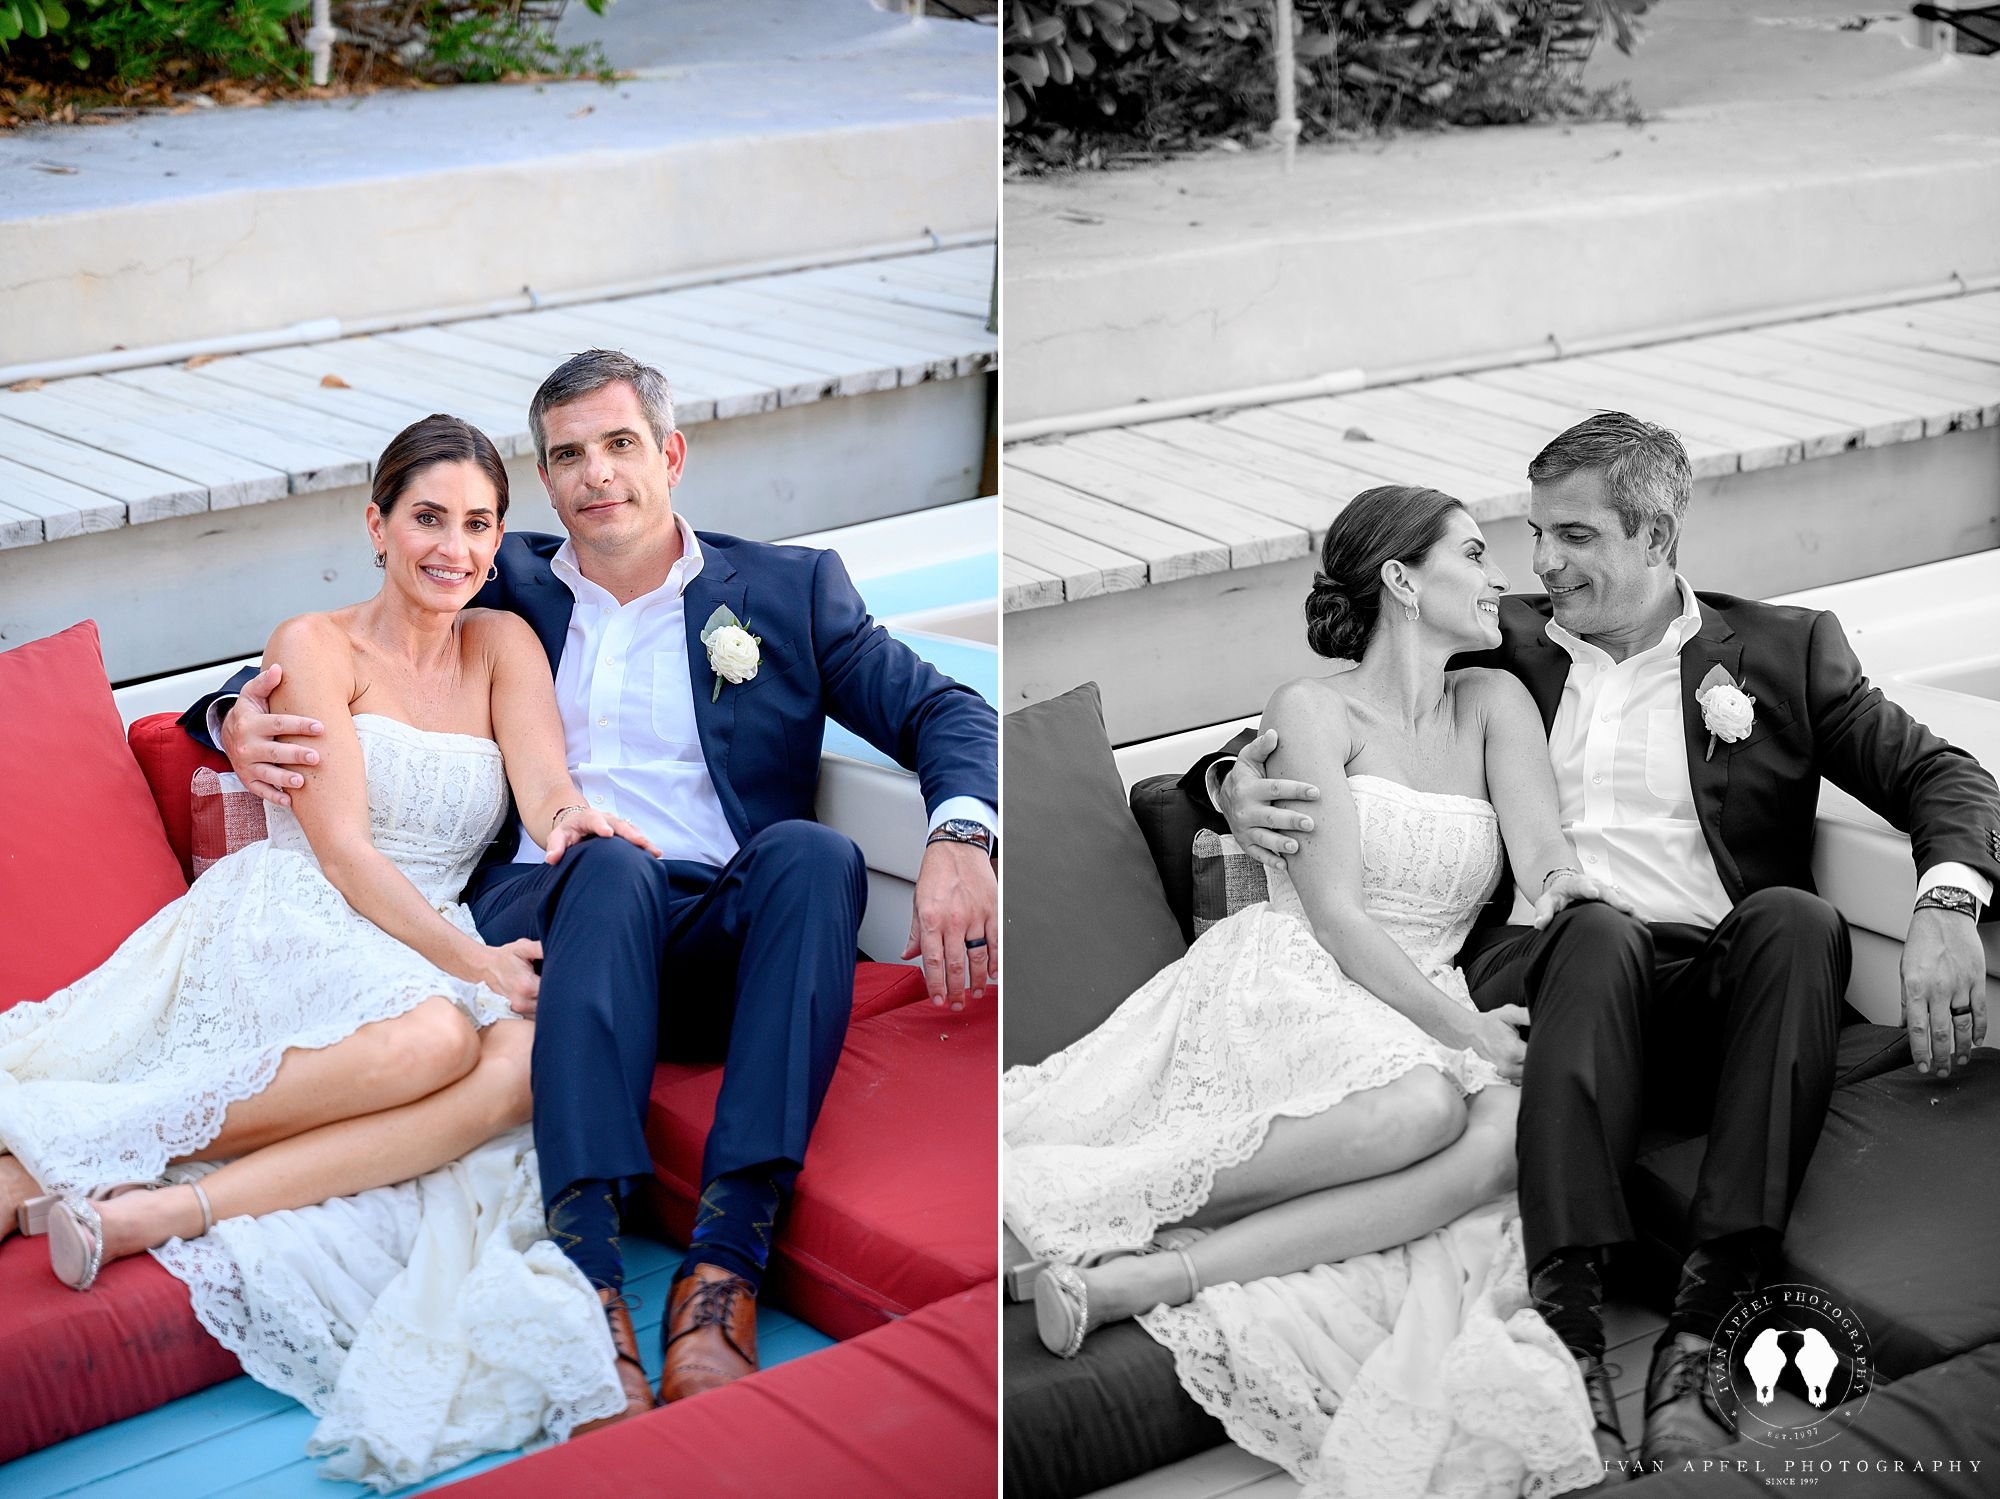 Tandis-Carter-Casa-Morada-Wedding-Ivan-Apfel-Photography_0030.jpg